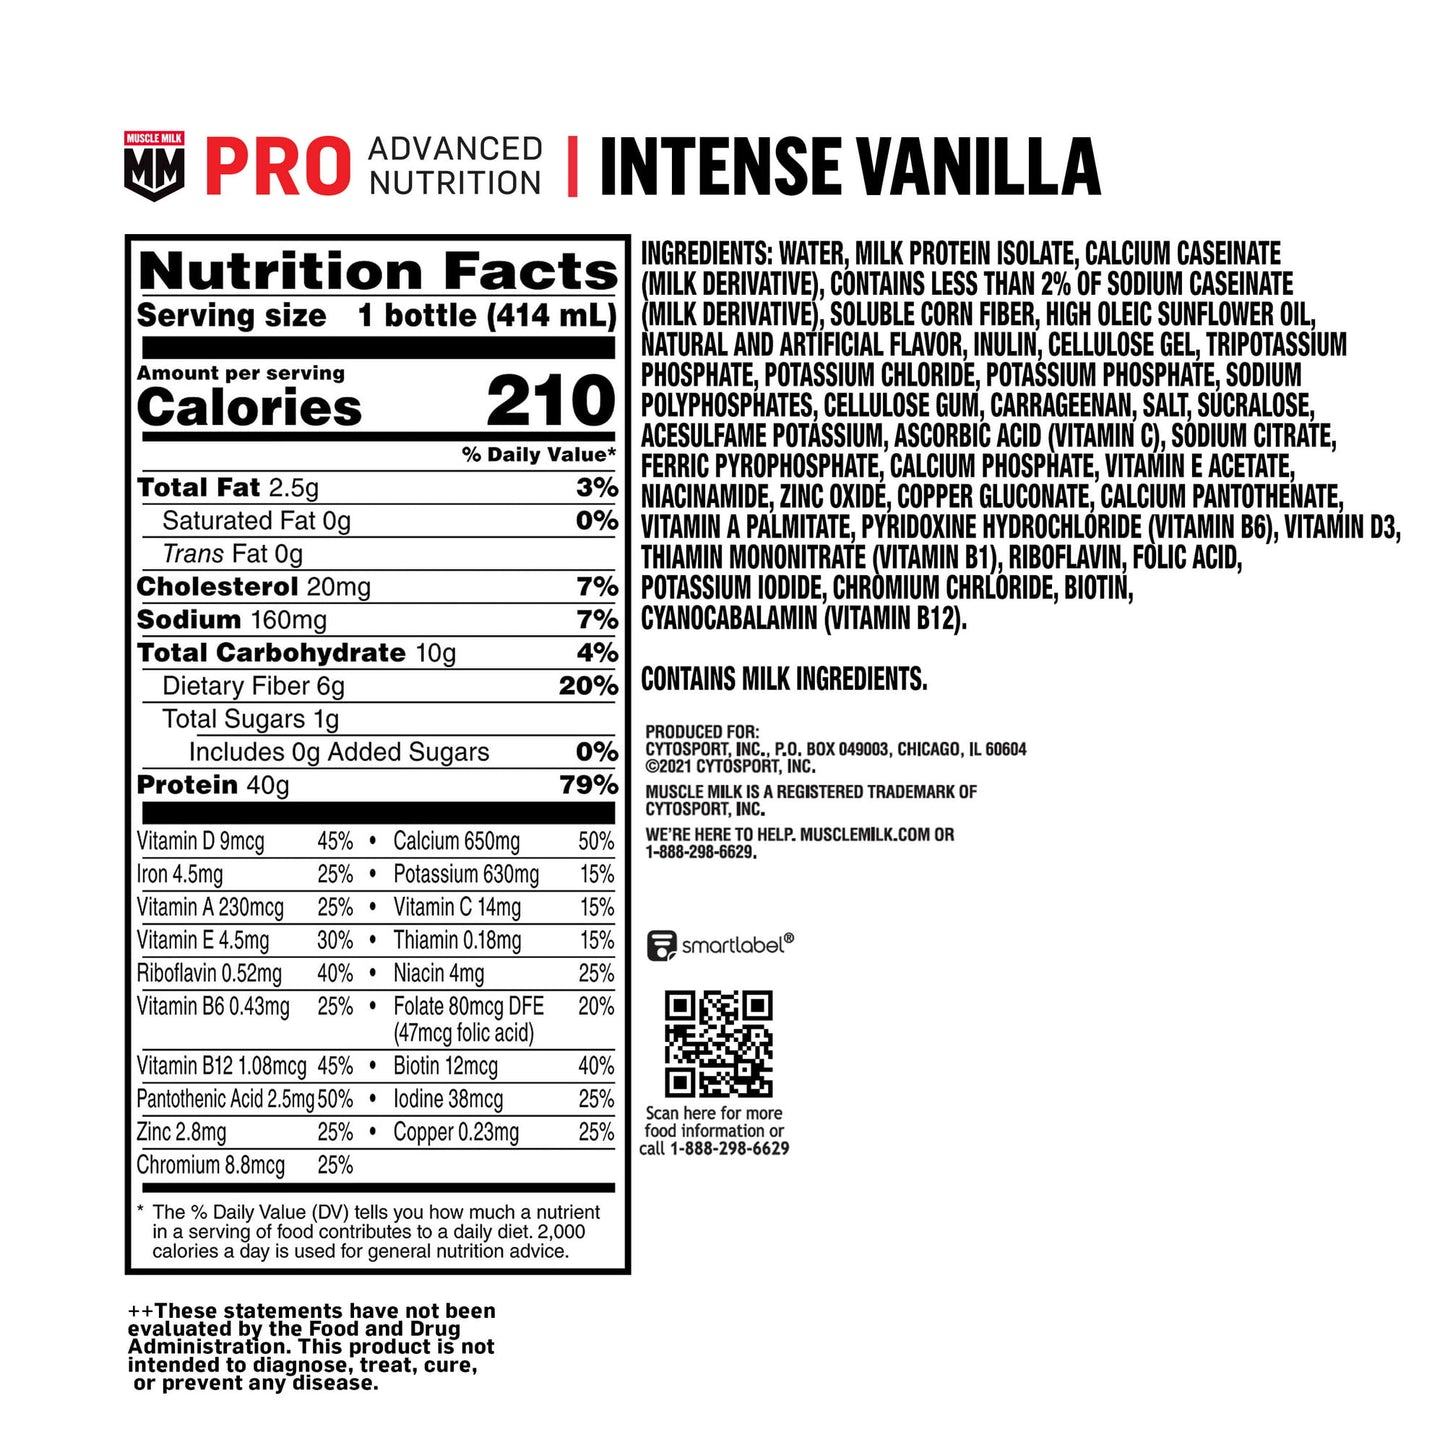 Muscle Milk Pro Intense Vanilla 14oz